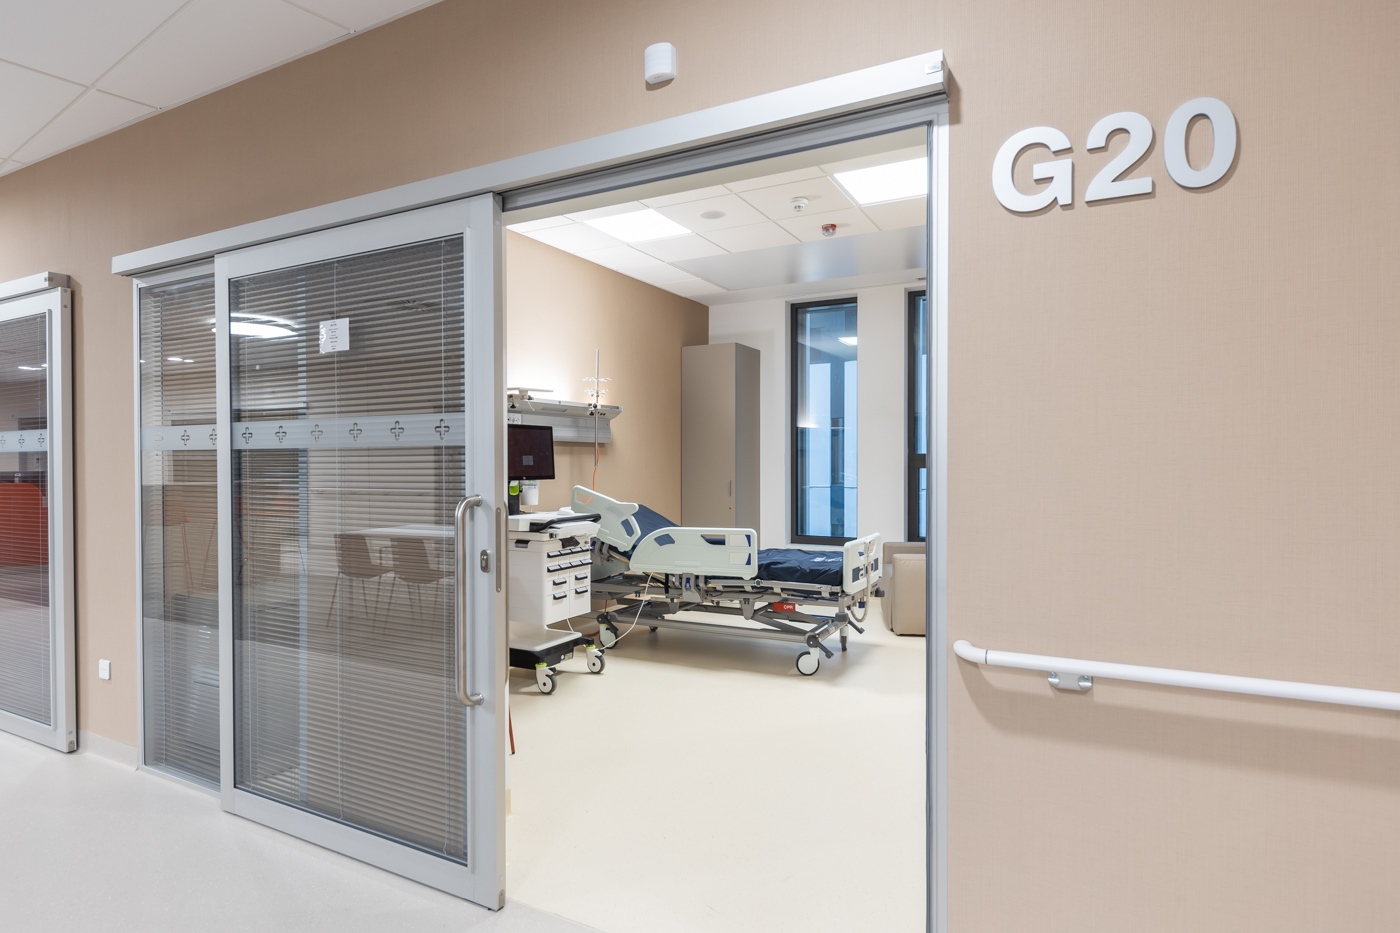 Izby uzatvárajú posuvné zasklené dvere so žalúziami, ktoré poskytujú pacientom súkromie.